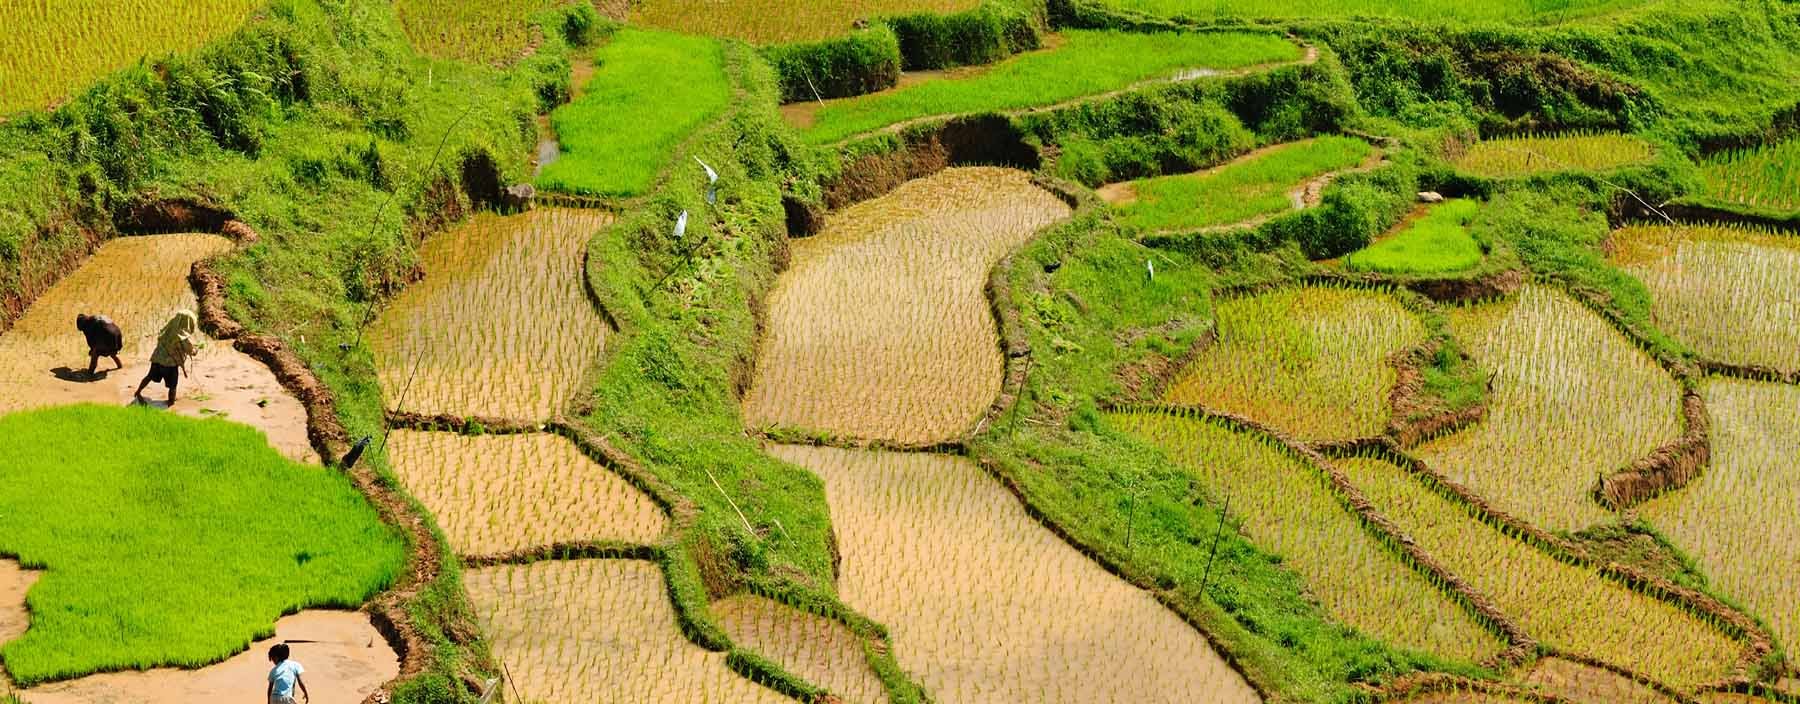 id, sulawesi, green rice terraces in tana toraja.jpg